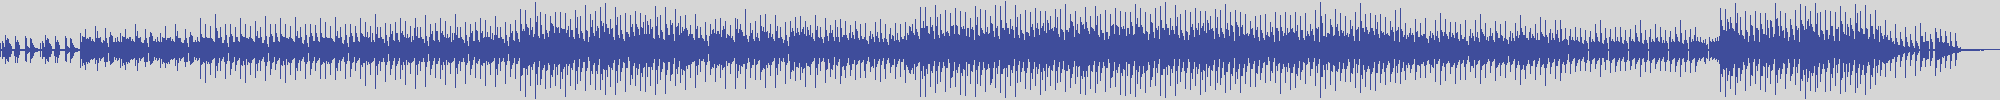 noclouds_chillout [NOC029] Cote D'azure - Busta [St. Tropez Cool Mix] audio wave form